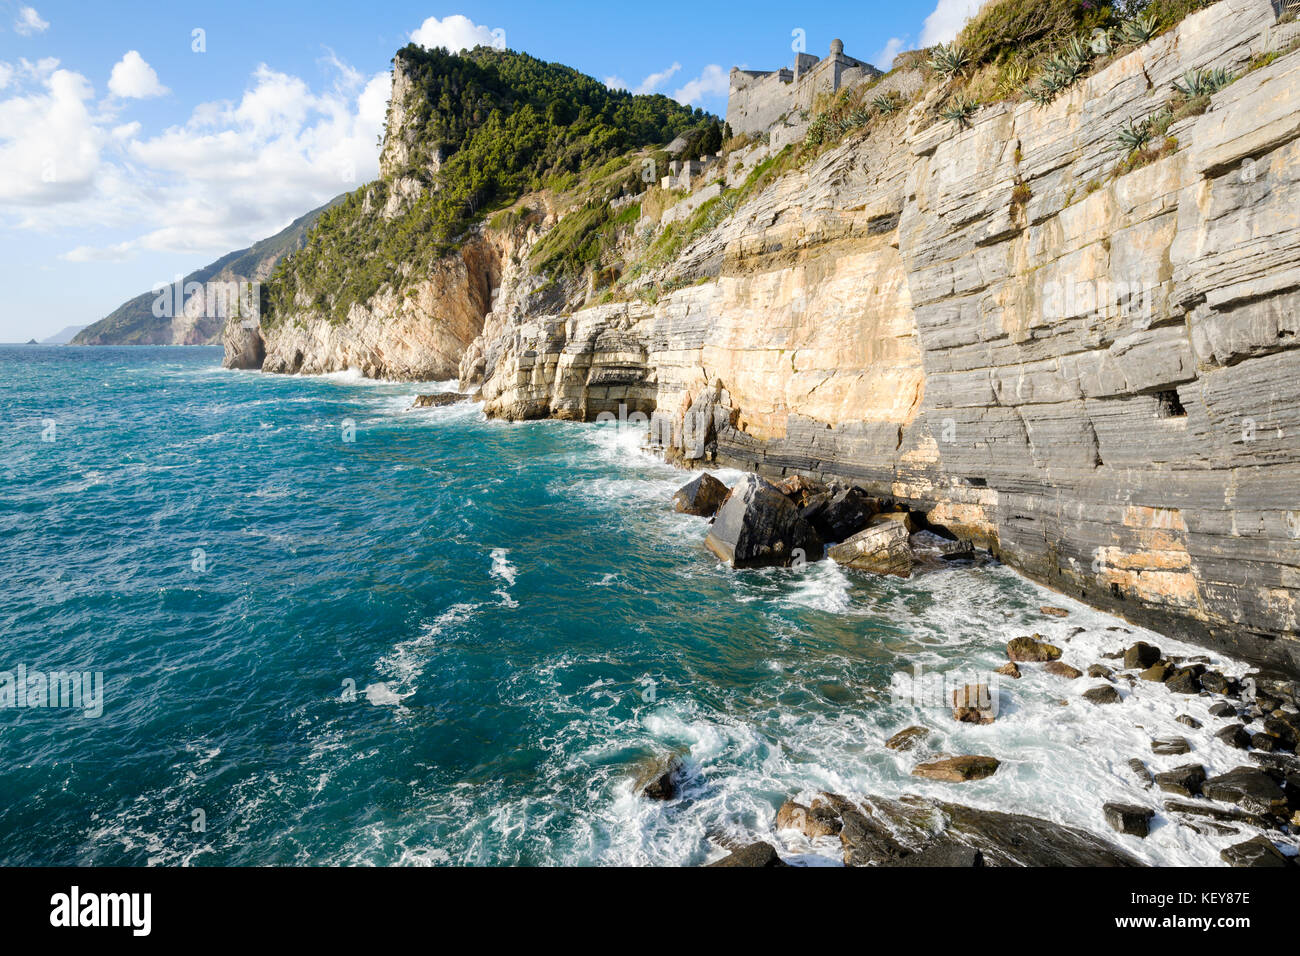 Coastline at Porto Venere with the view up to the Castle Doria, Porto Venere, Liguria, Italy Stock Photo